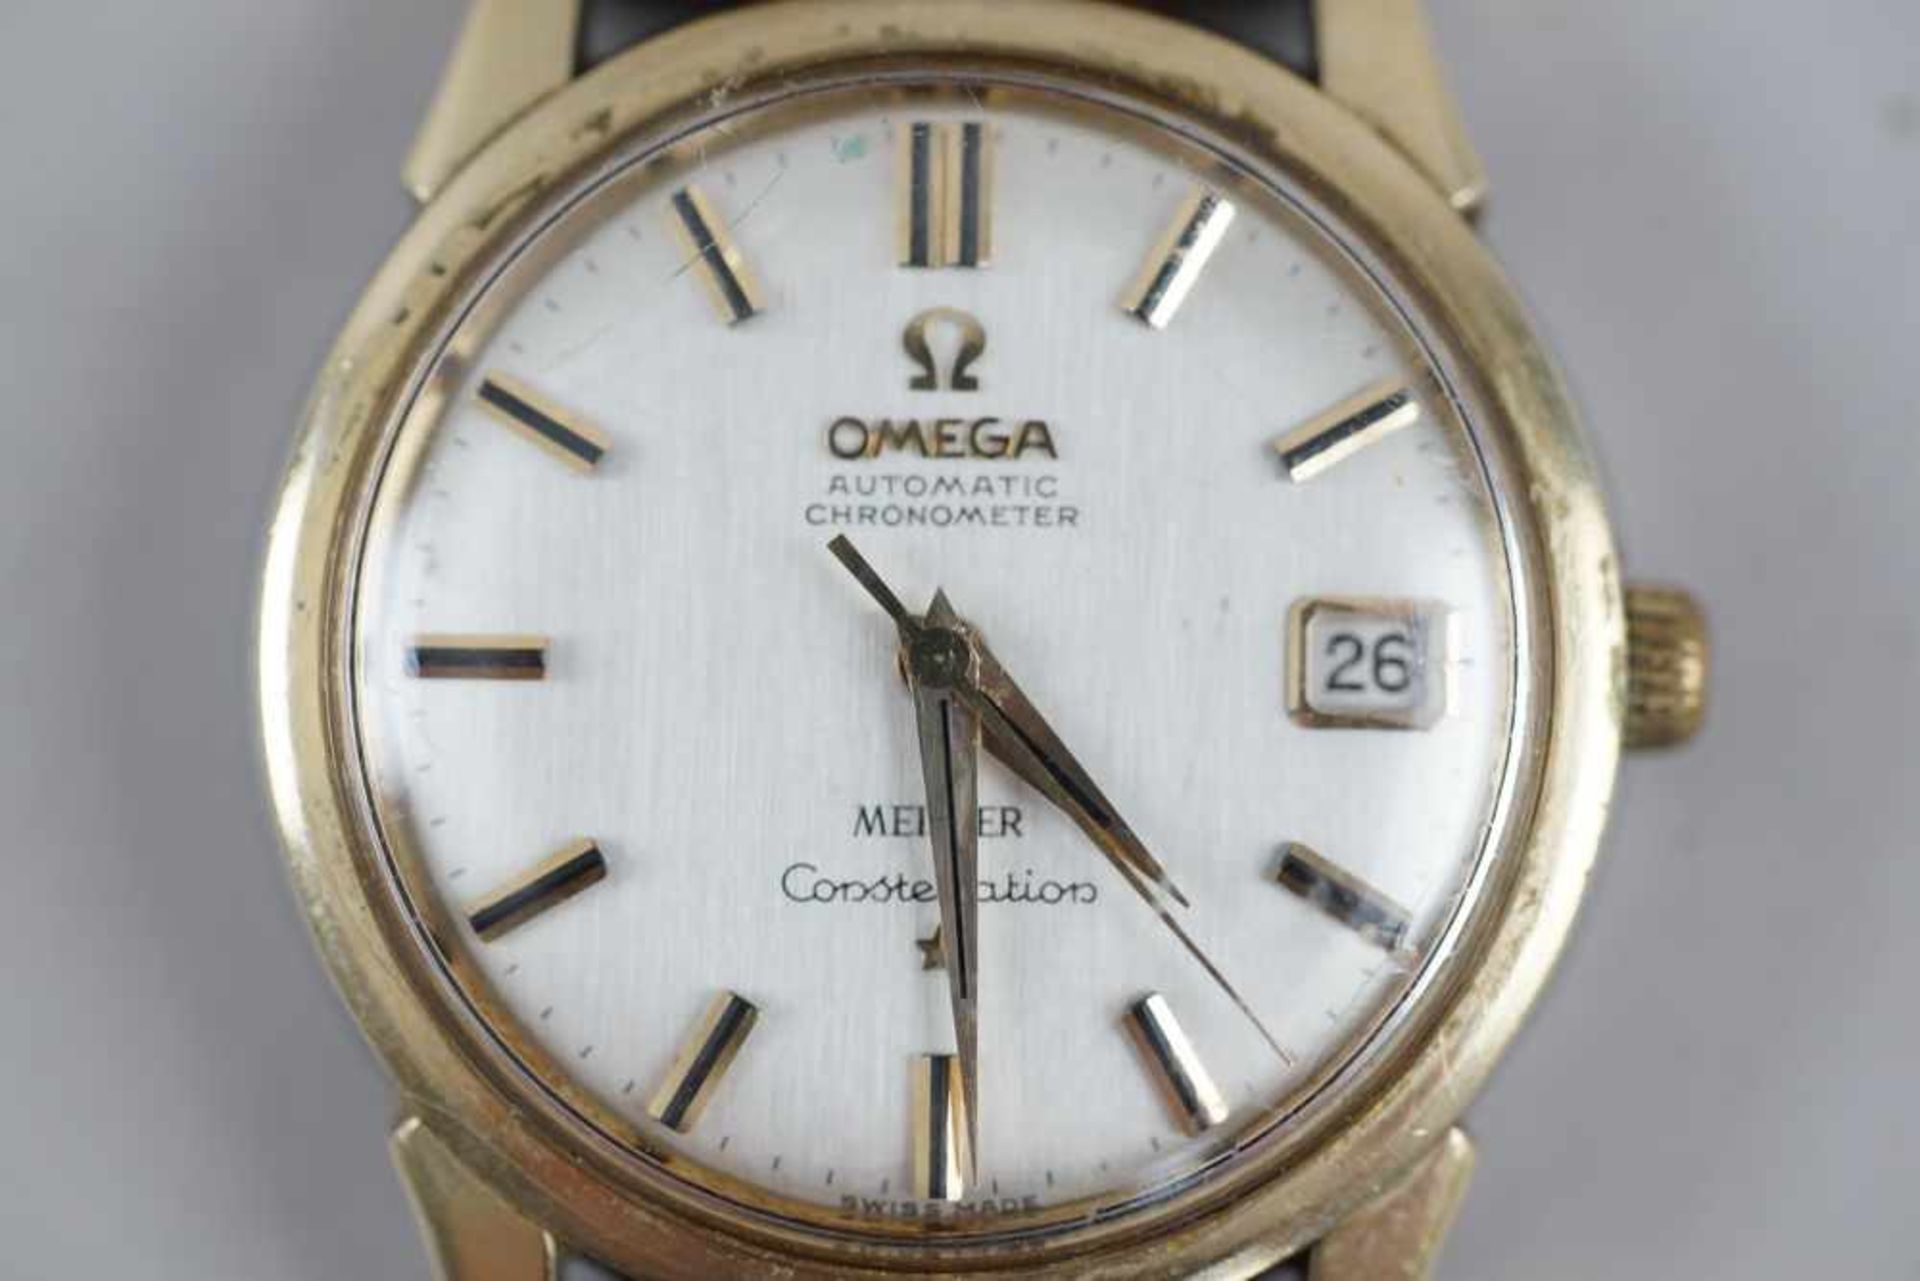 Omega Herren Armbanduhr mit Lederband, Durchmesser 3,5 cm- - -24.00 % buyer's premium on the - Bild 3 aus 5